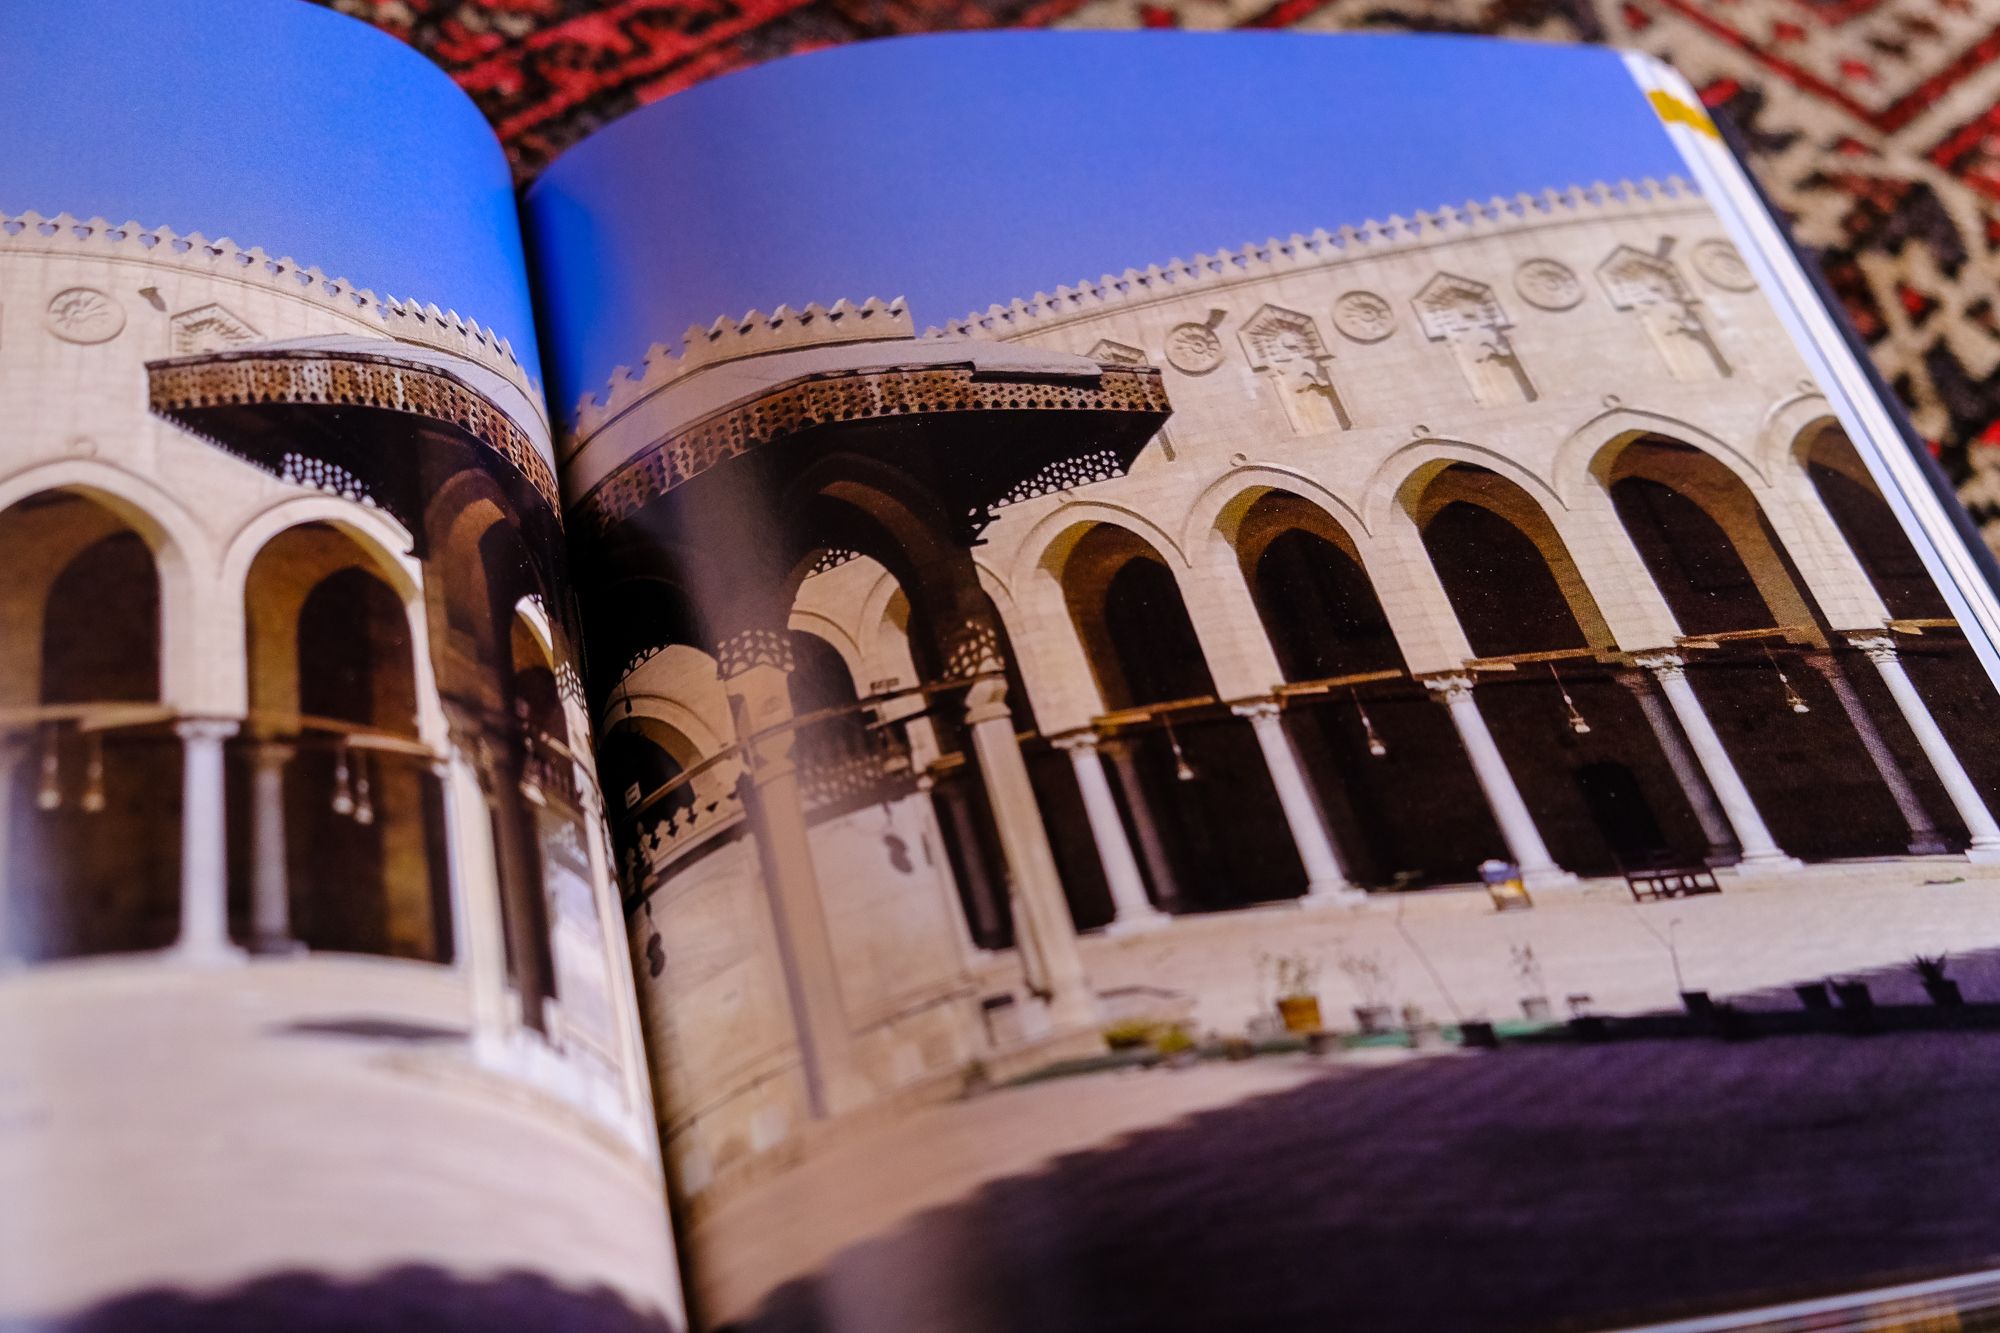 Spiritual Significance in Islamic Architecture